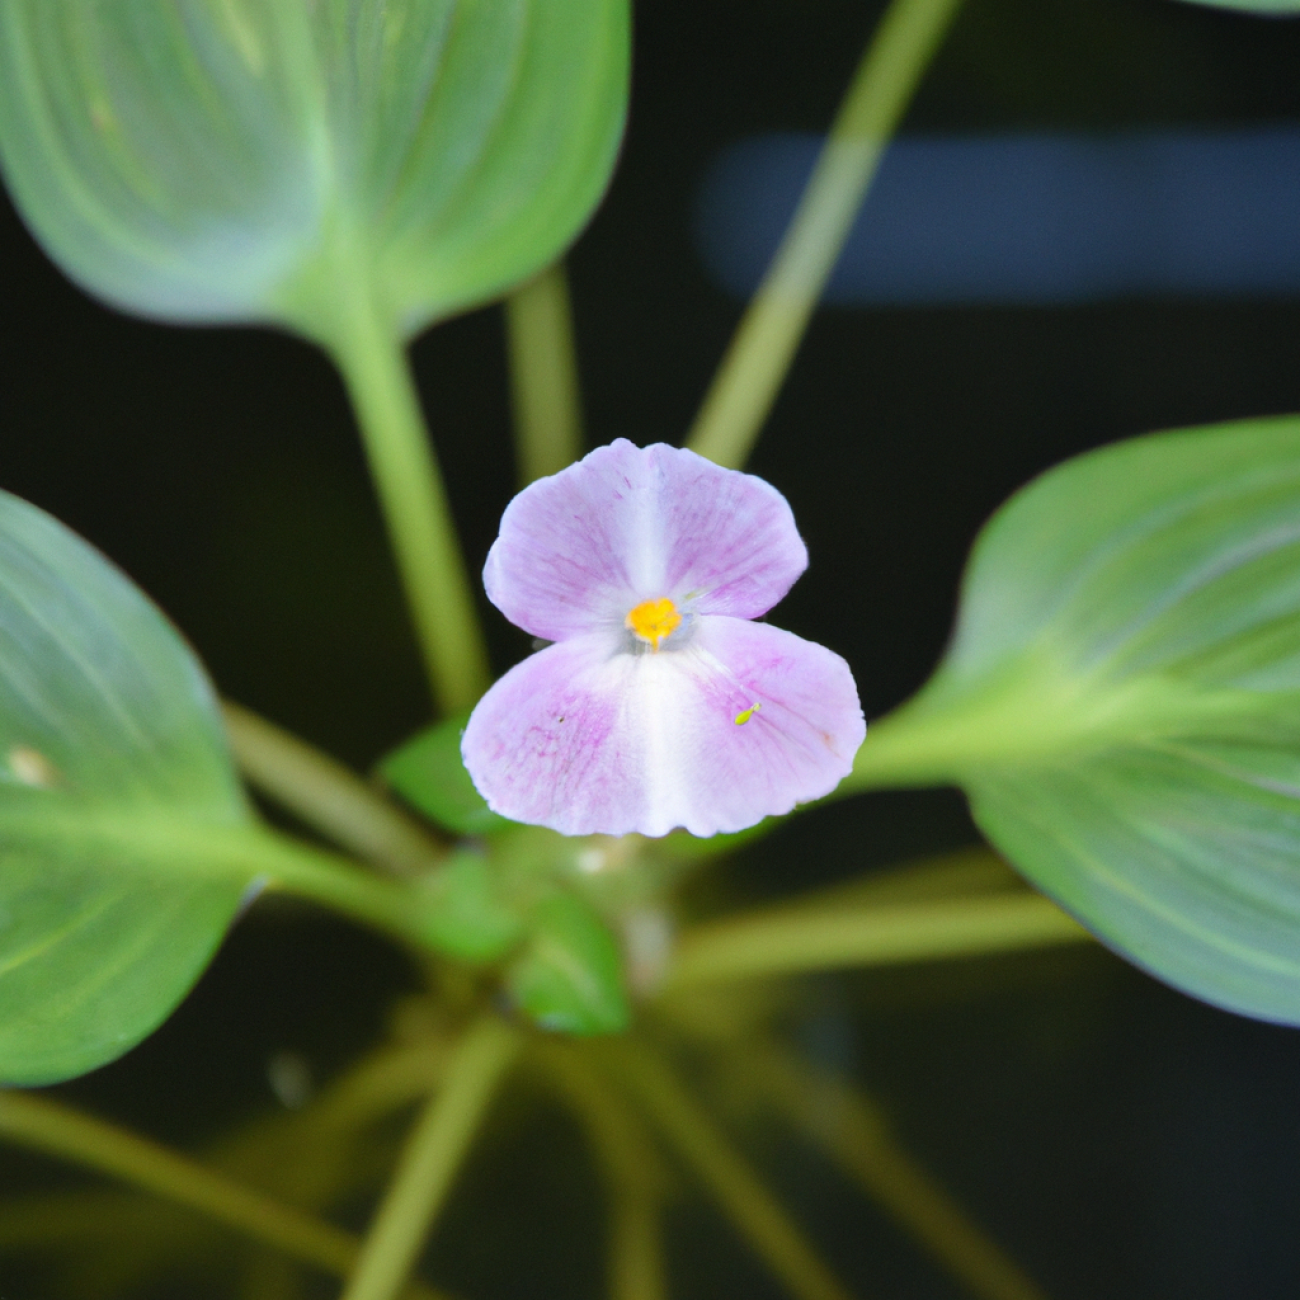 - Prozkoumejte možnosti kombinace rostliny Echinodorus Tricolor s dalšími druhy v akváriu pro harmonický vzhled